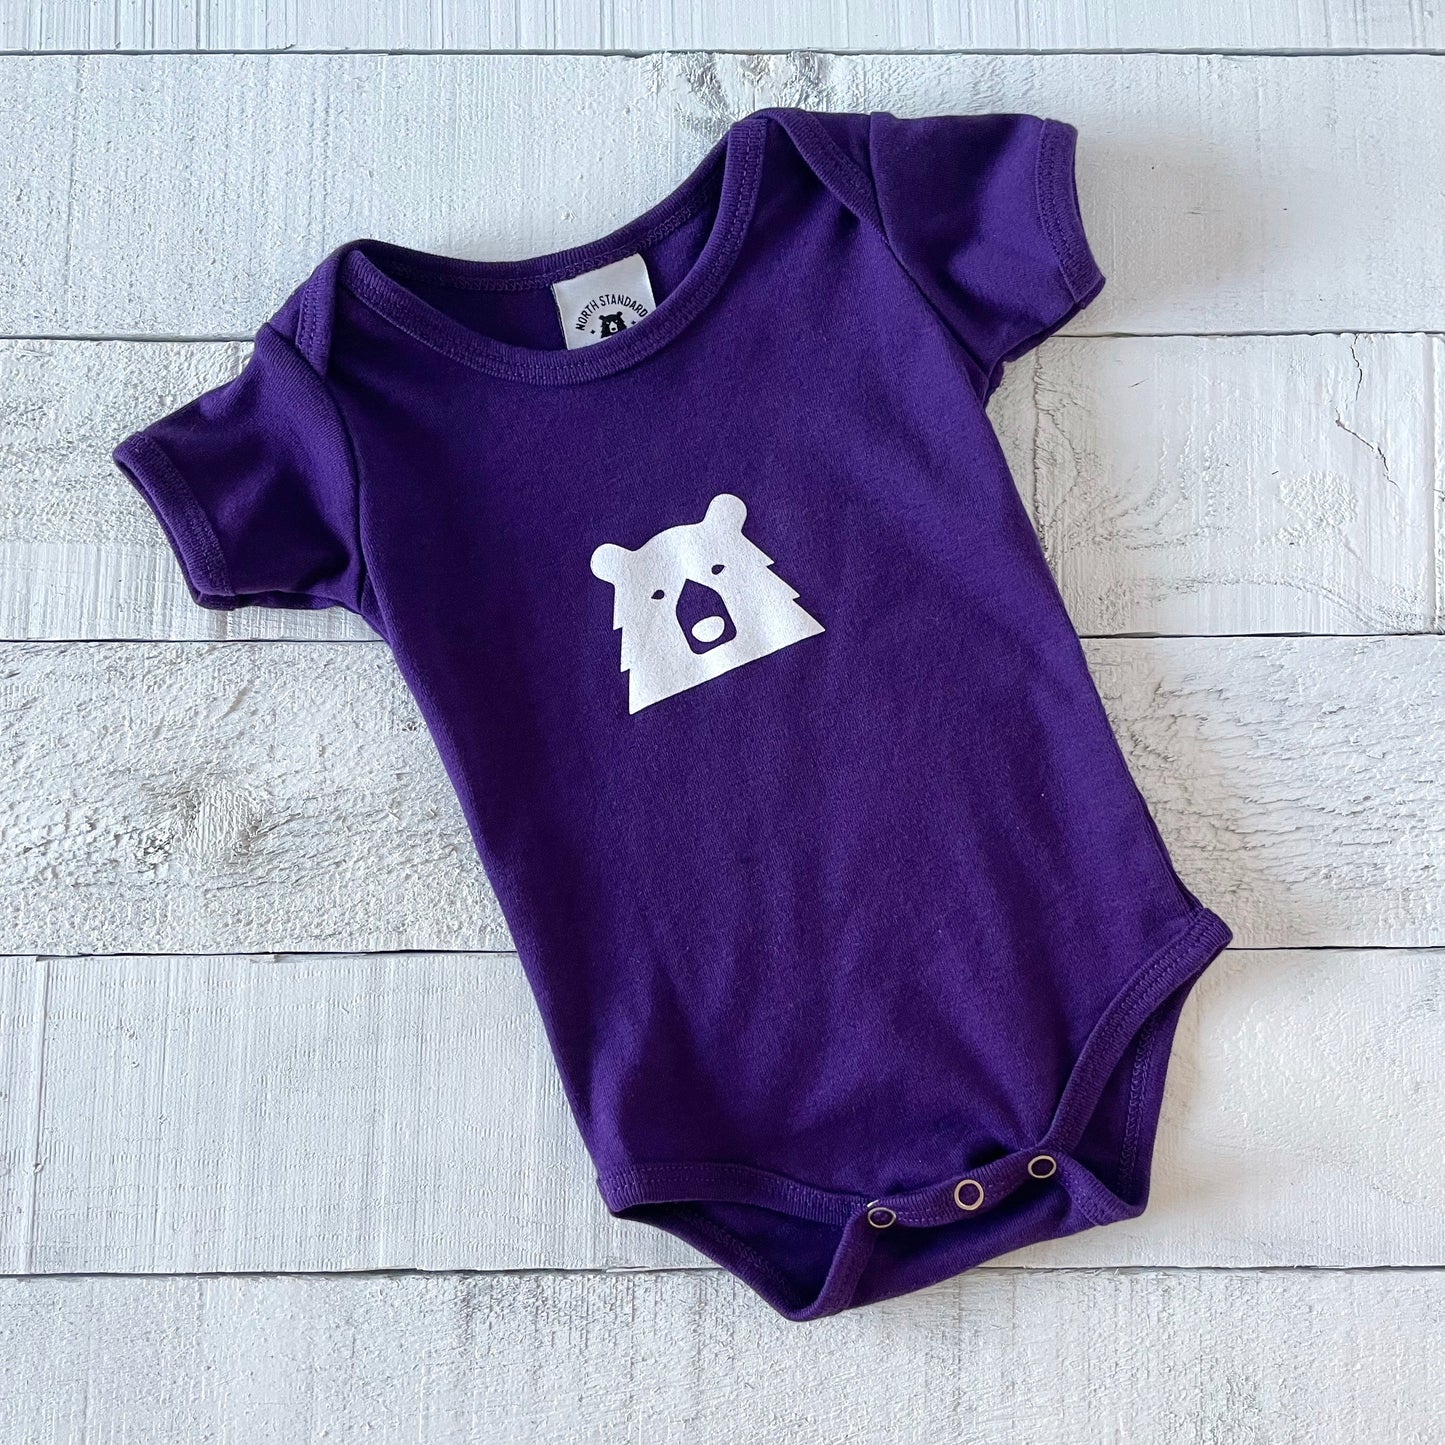 Baby Mascot Onesie - Purple with White